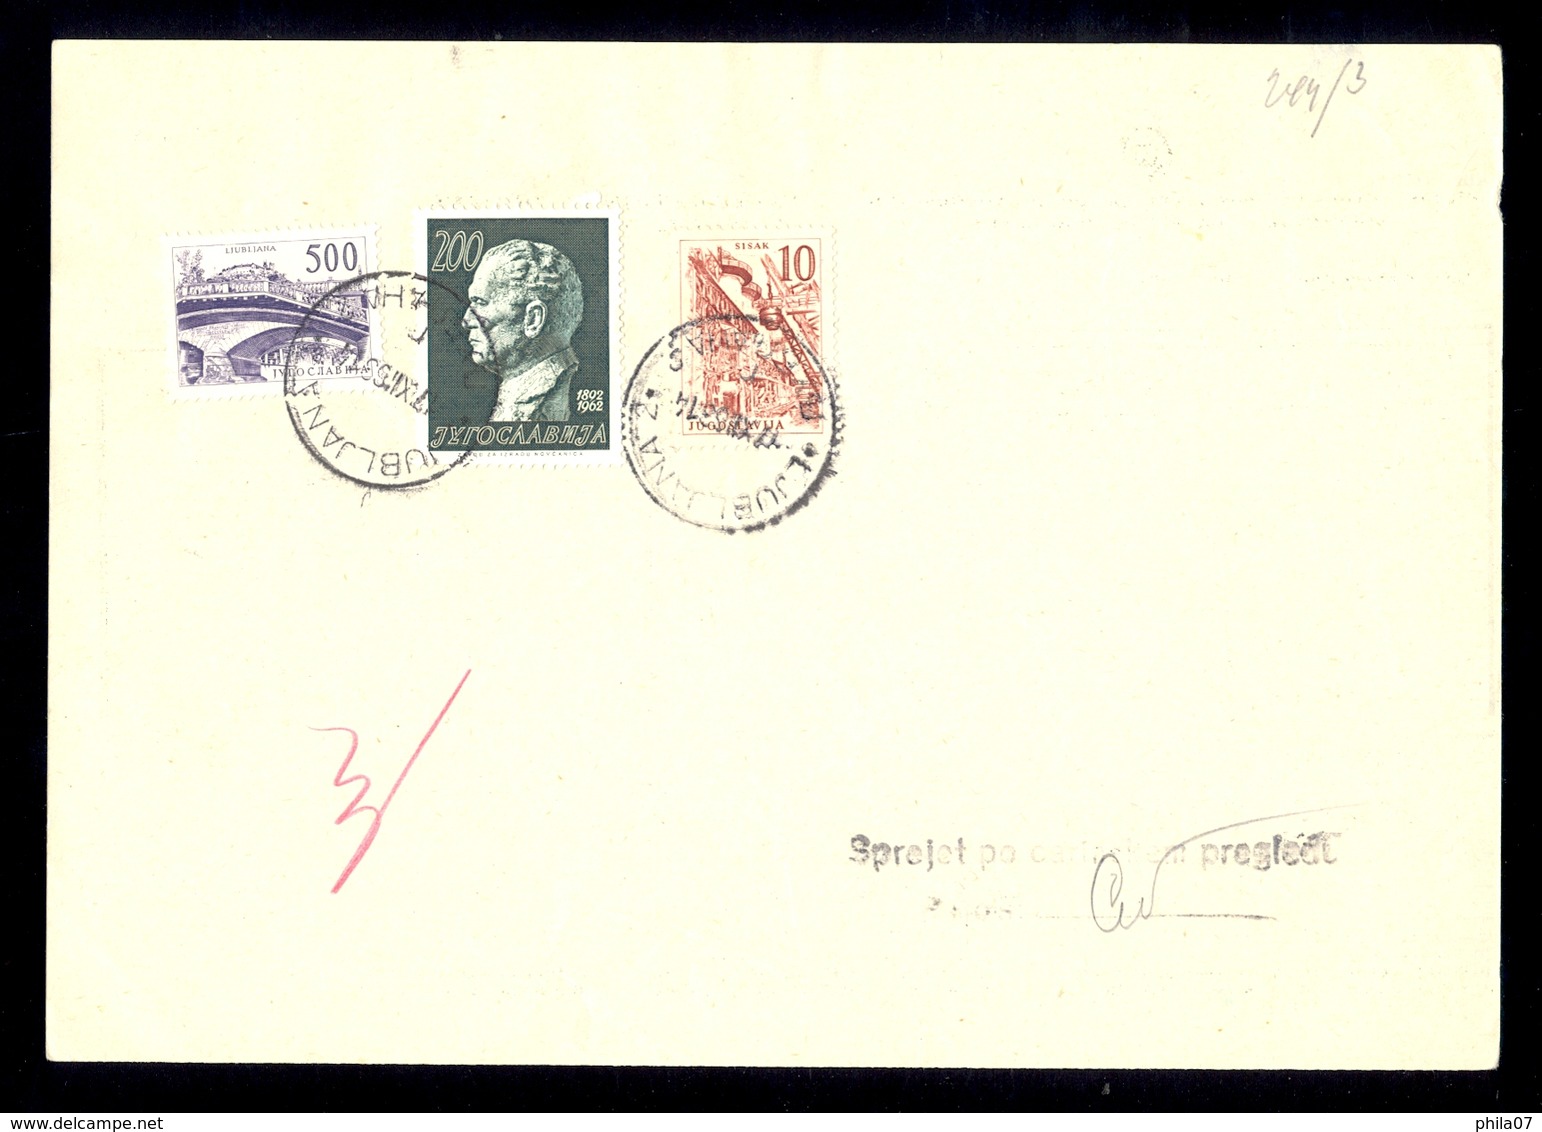 Slovenia, Yugoslavia - parcel cards received to the postal office Kranj, Skofja Loka and Ljubljana. High and rare franki